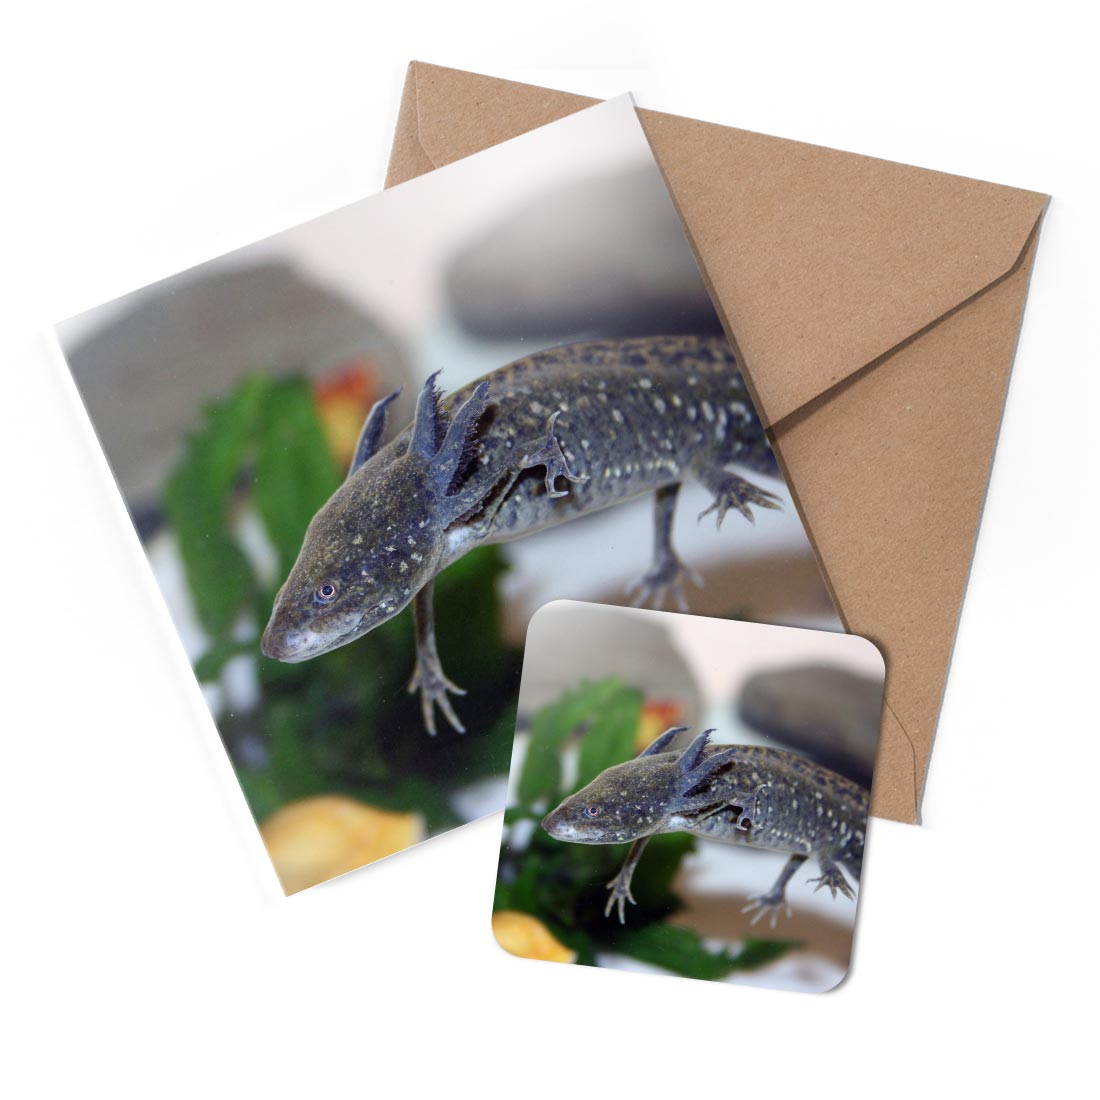 1 x Greeting Card & Coaster Set - Cool Axolotl Dragon Fish #50599